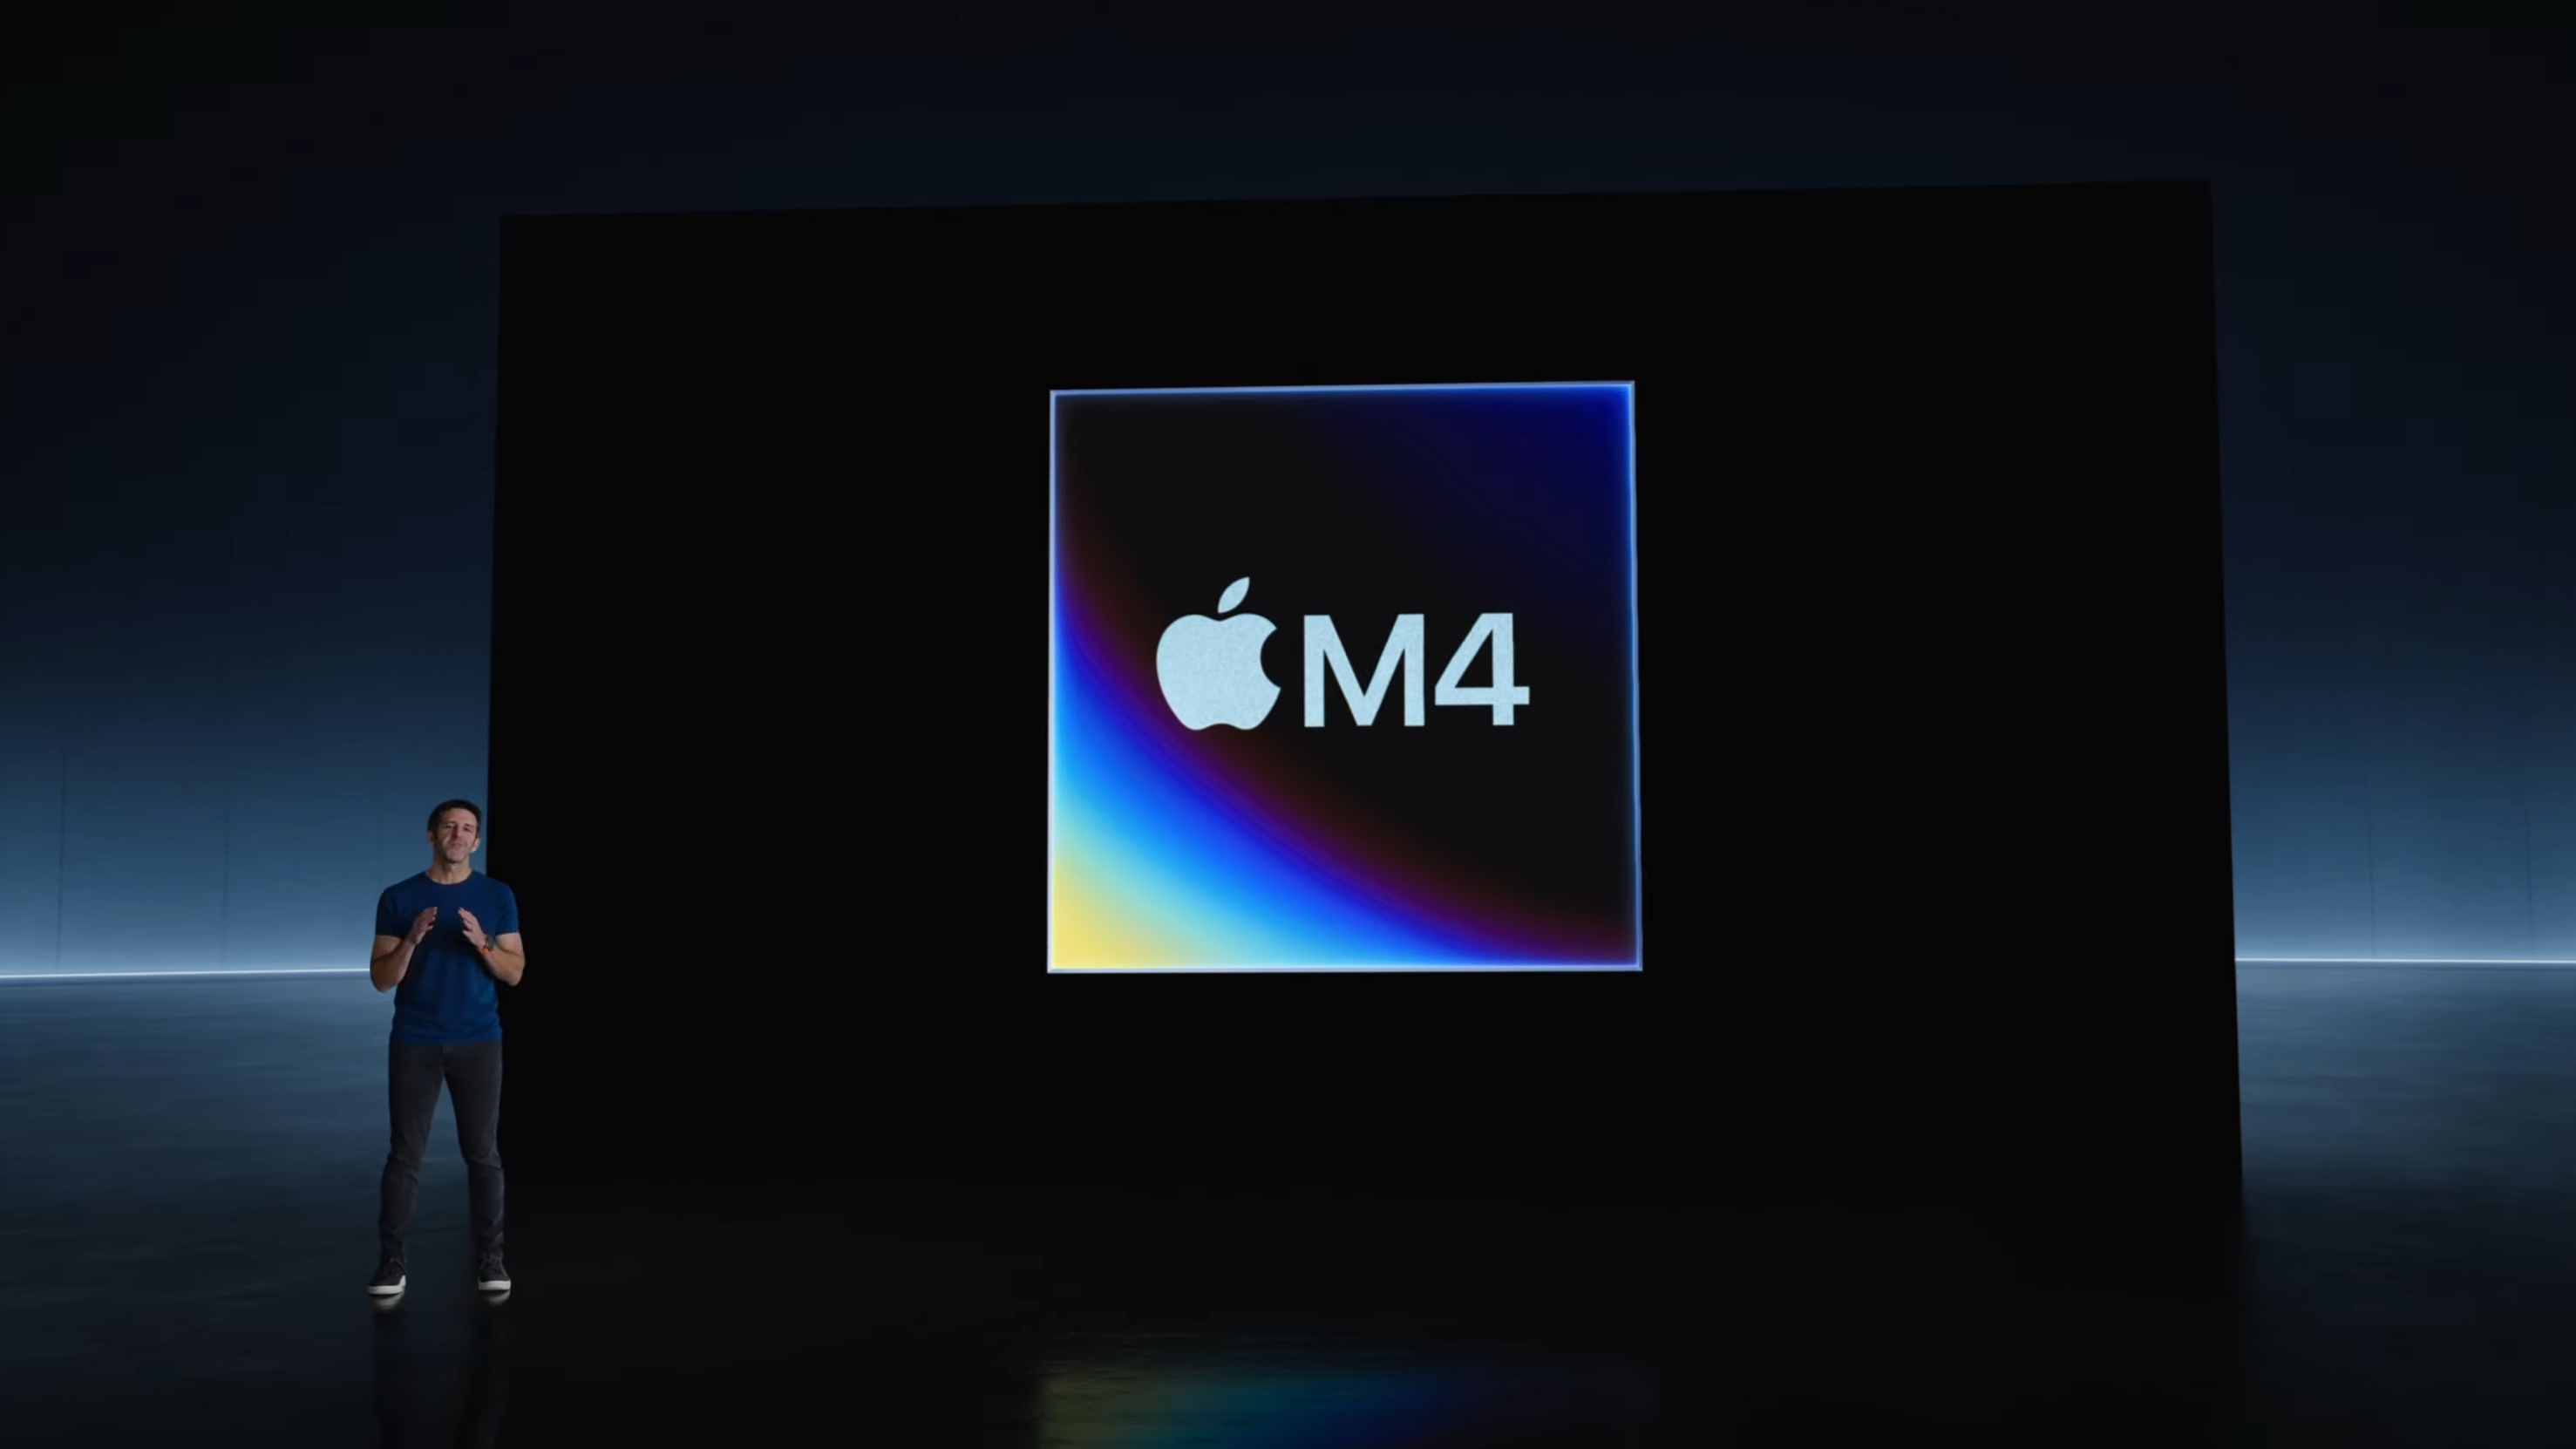 Tillkännagivande av Apple M4 chippet.